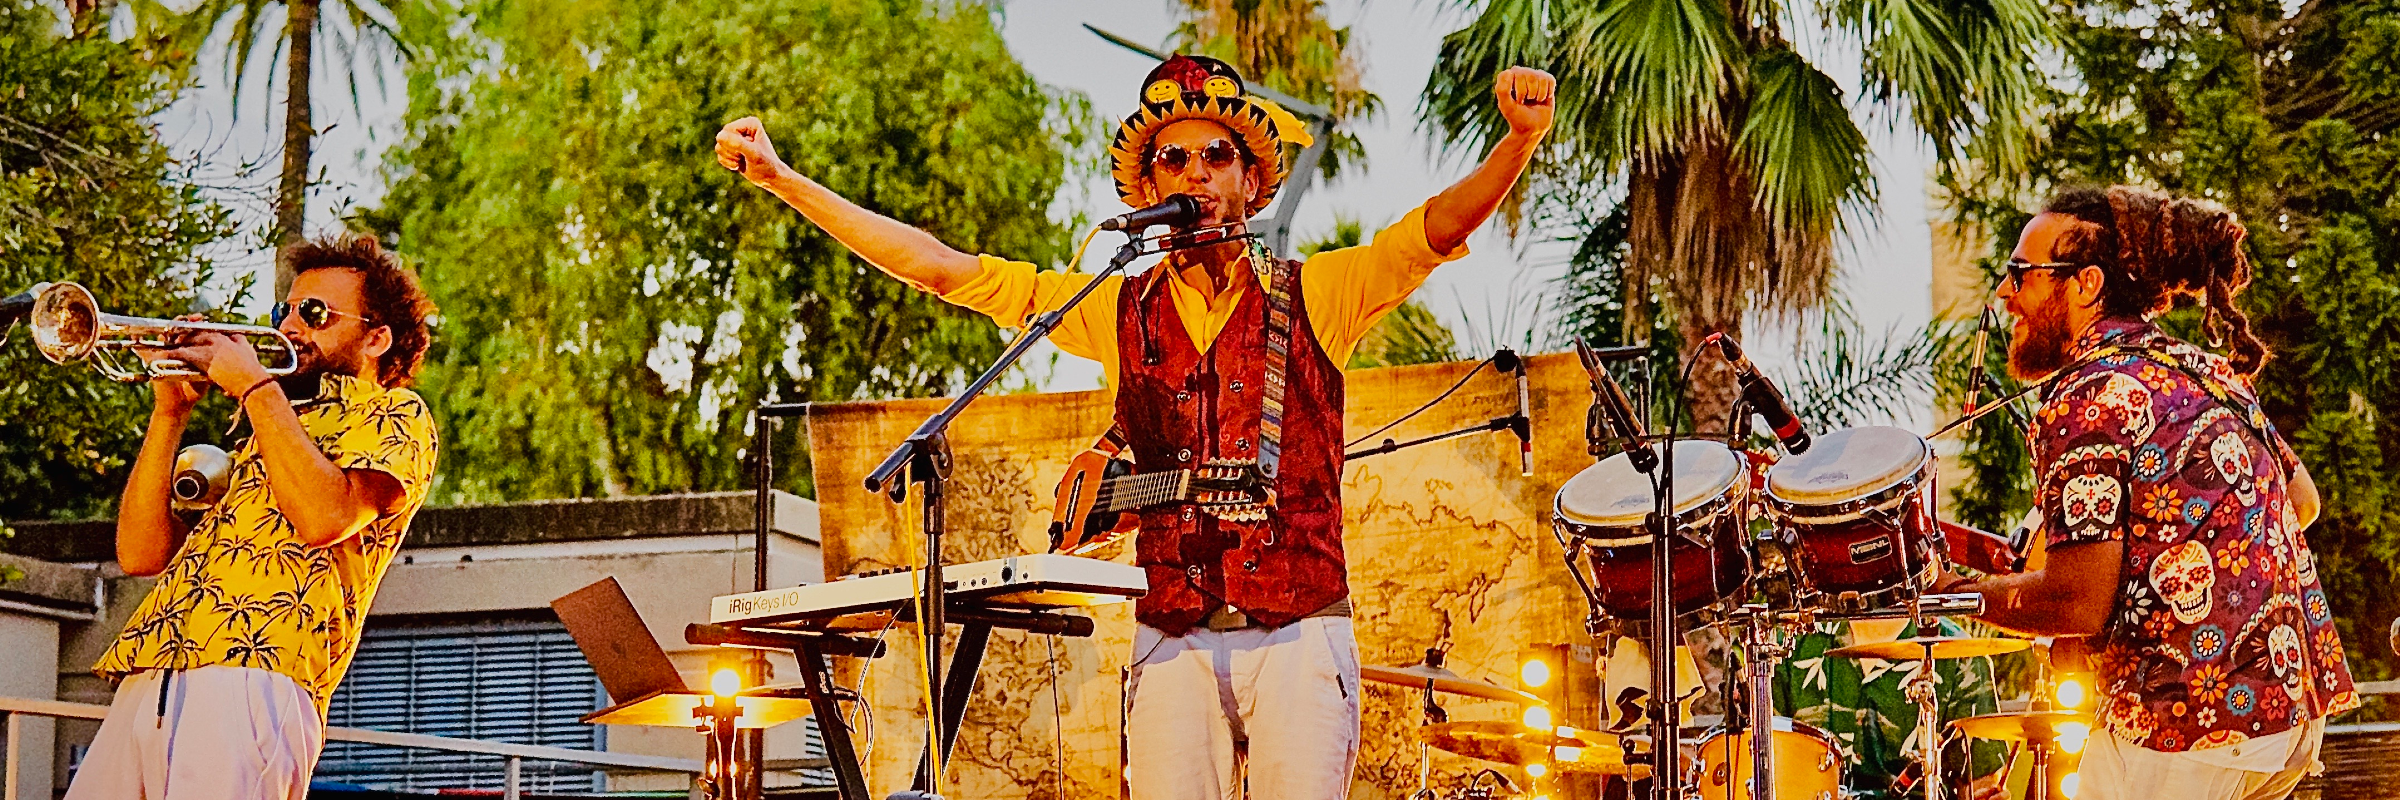 Zikomunity, musicien Chanteur en représentation à Alpes Maritimes - photo de couverture